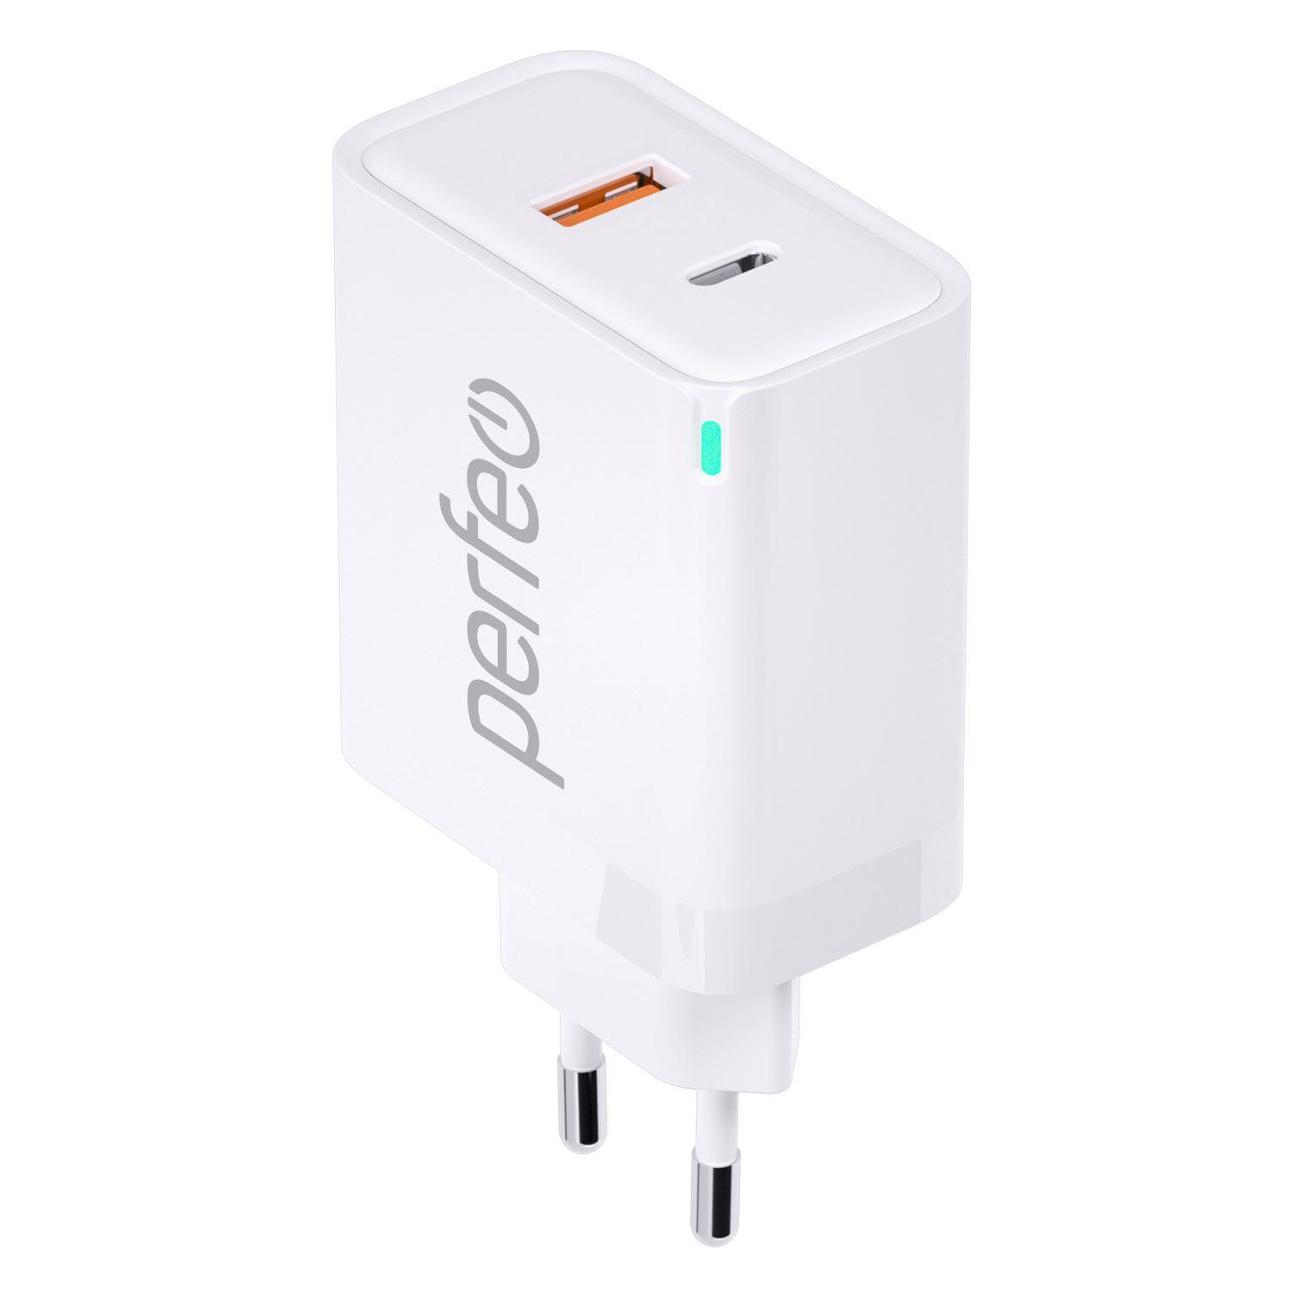 Сетевое зарядное устройство Perfeo I4654 45 Вт, USB, EU, USB type-C, Quick Charge, PD, белый (I4654)